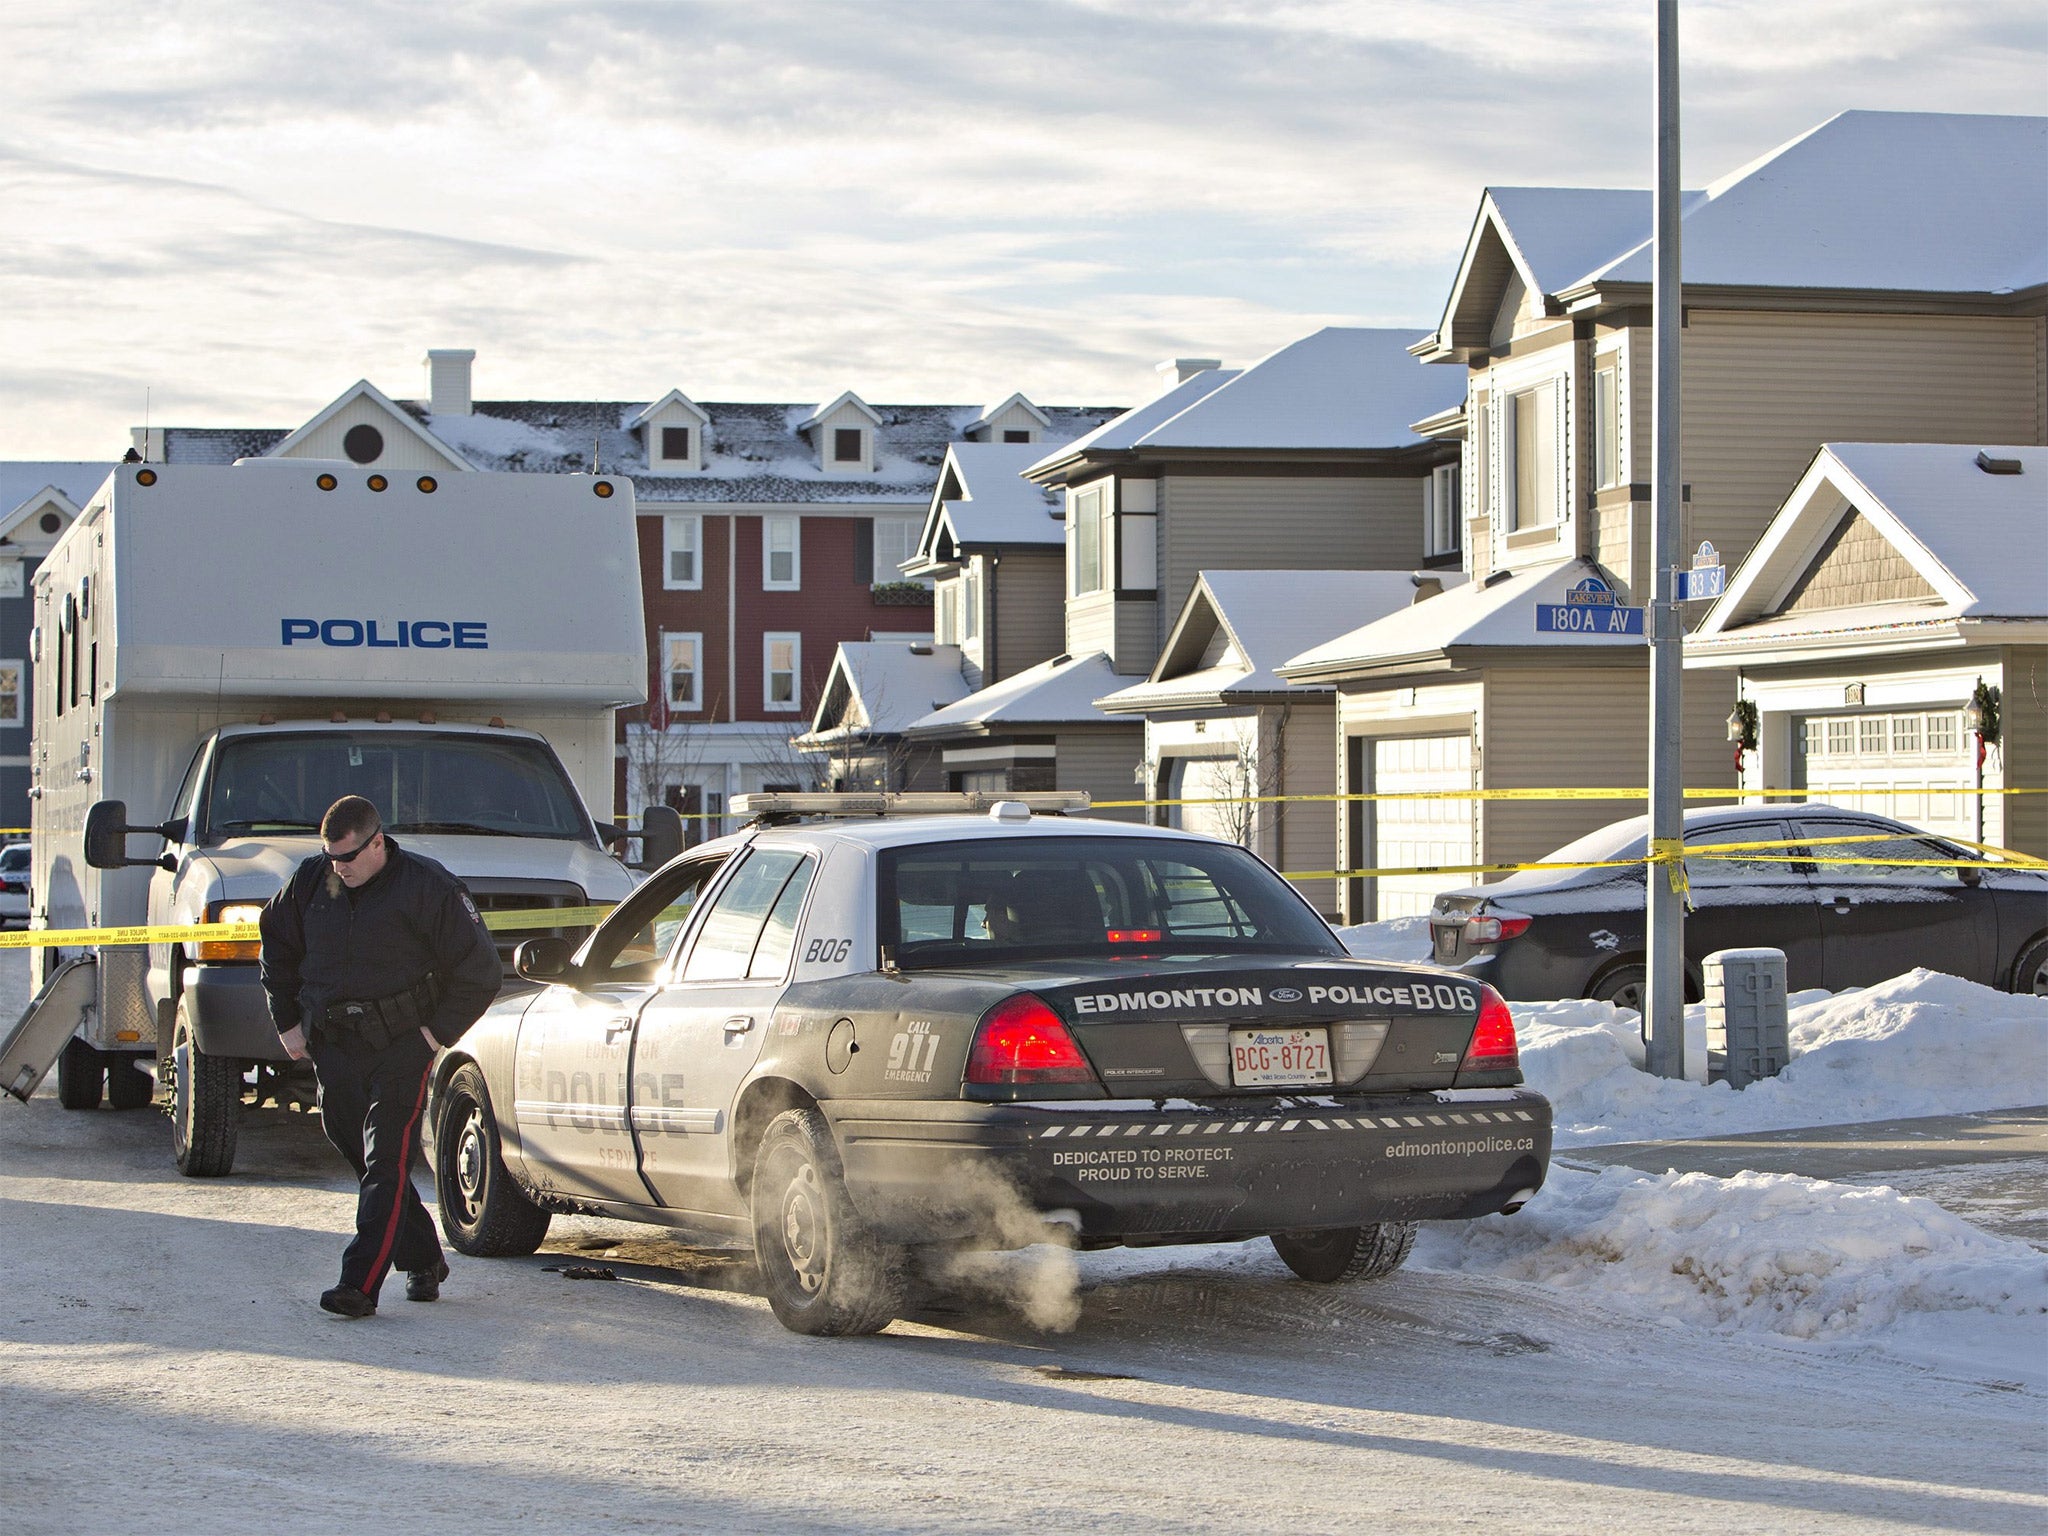 Police investigate the scene where multiple deaths occurred in Edmonton, Alberta, Canada